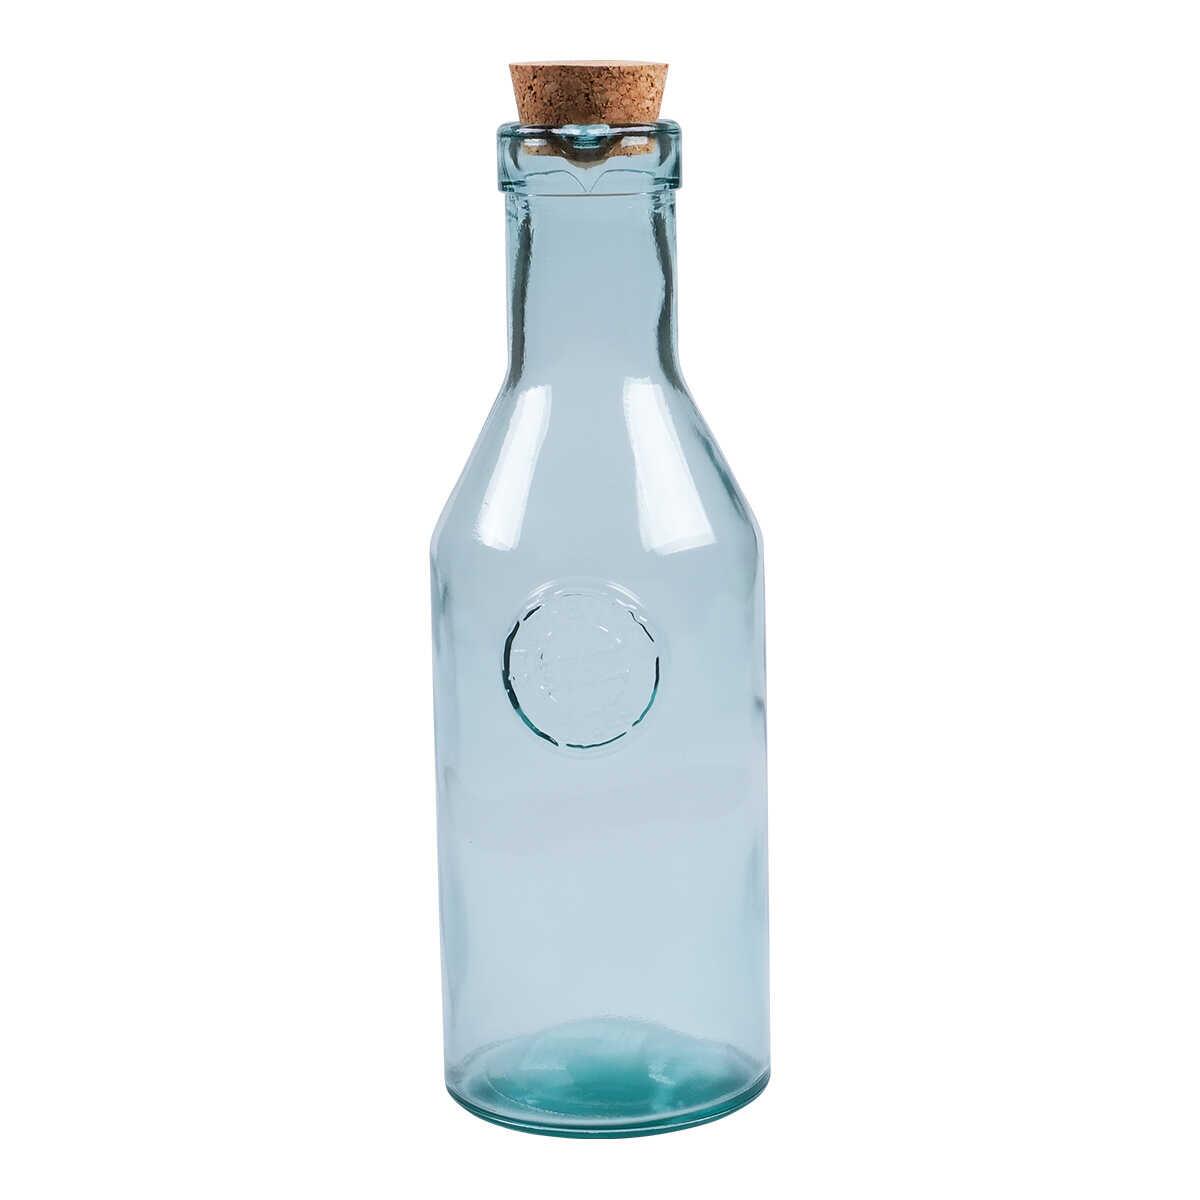 Sanmiguel Authentic Bottle 1 Liter